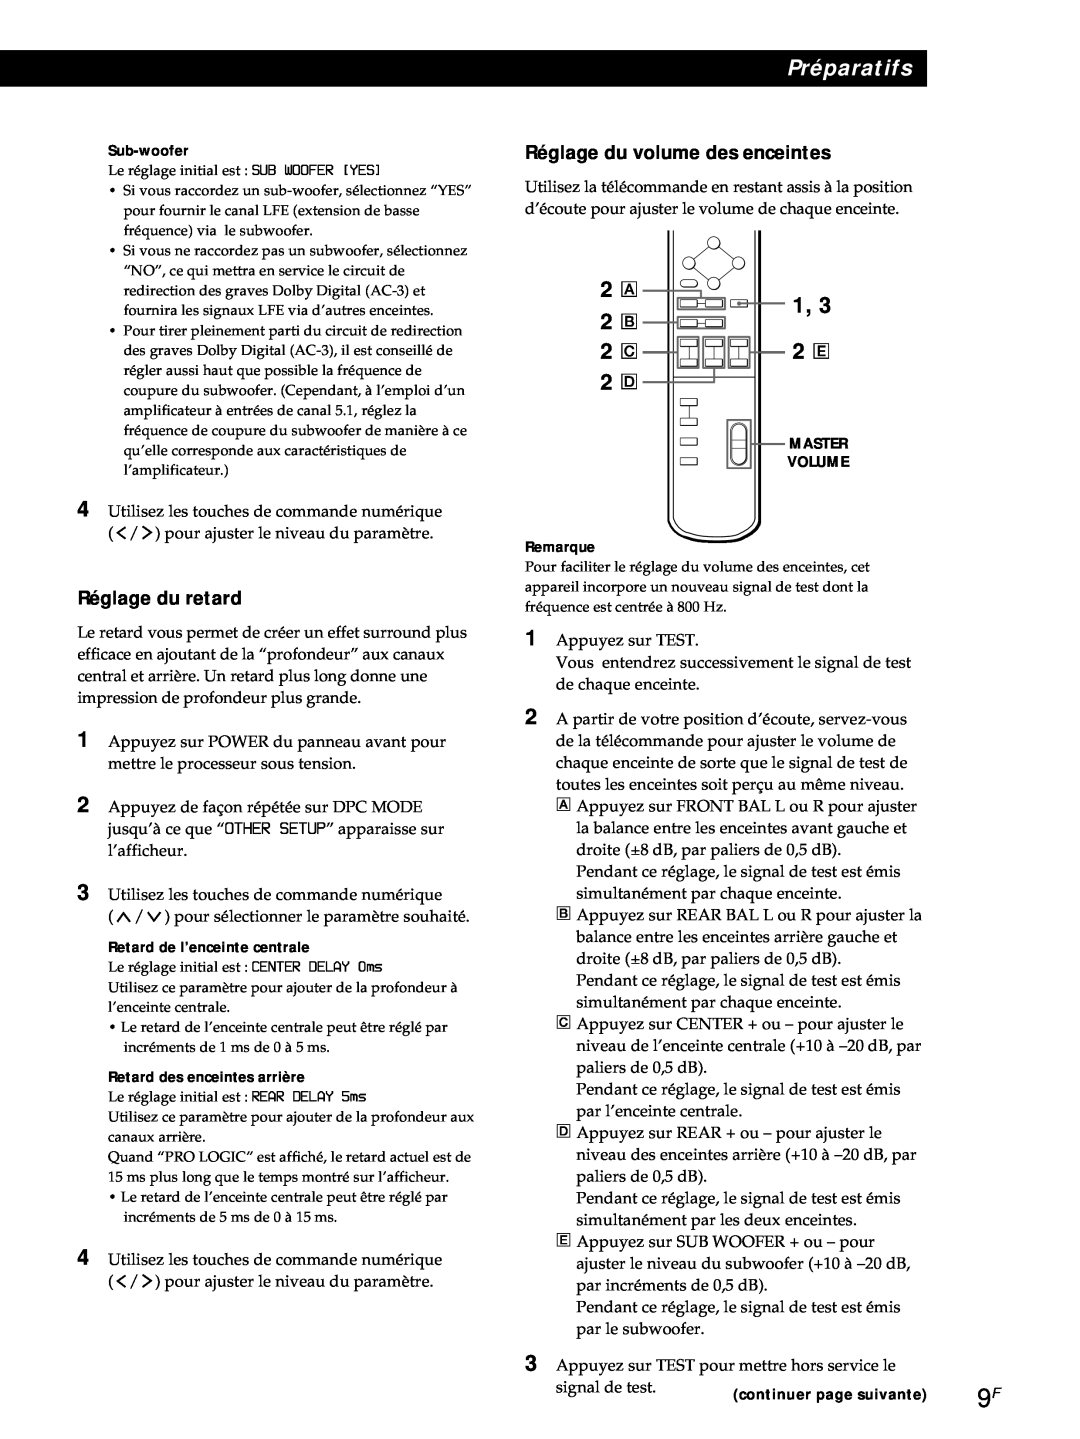 Sony SDP-E800 operating instructions Réglage du volume des enceintes, 2 A 2 B, Réglage du retard, Préparatifs 